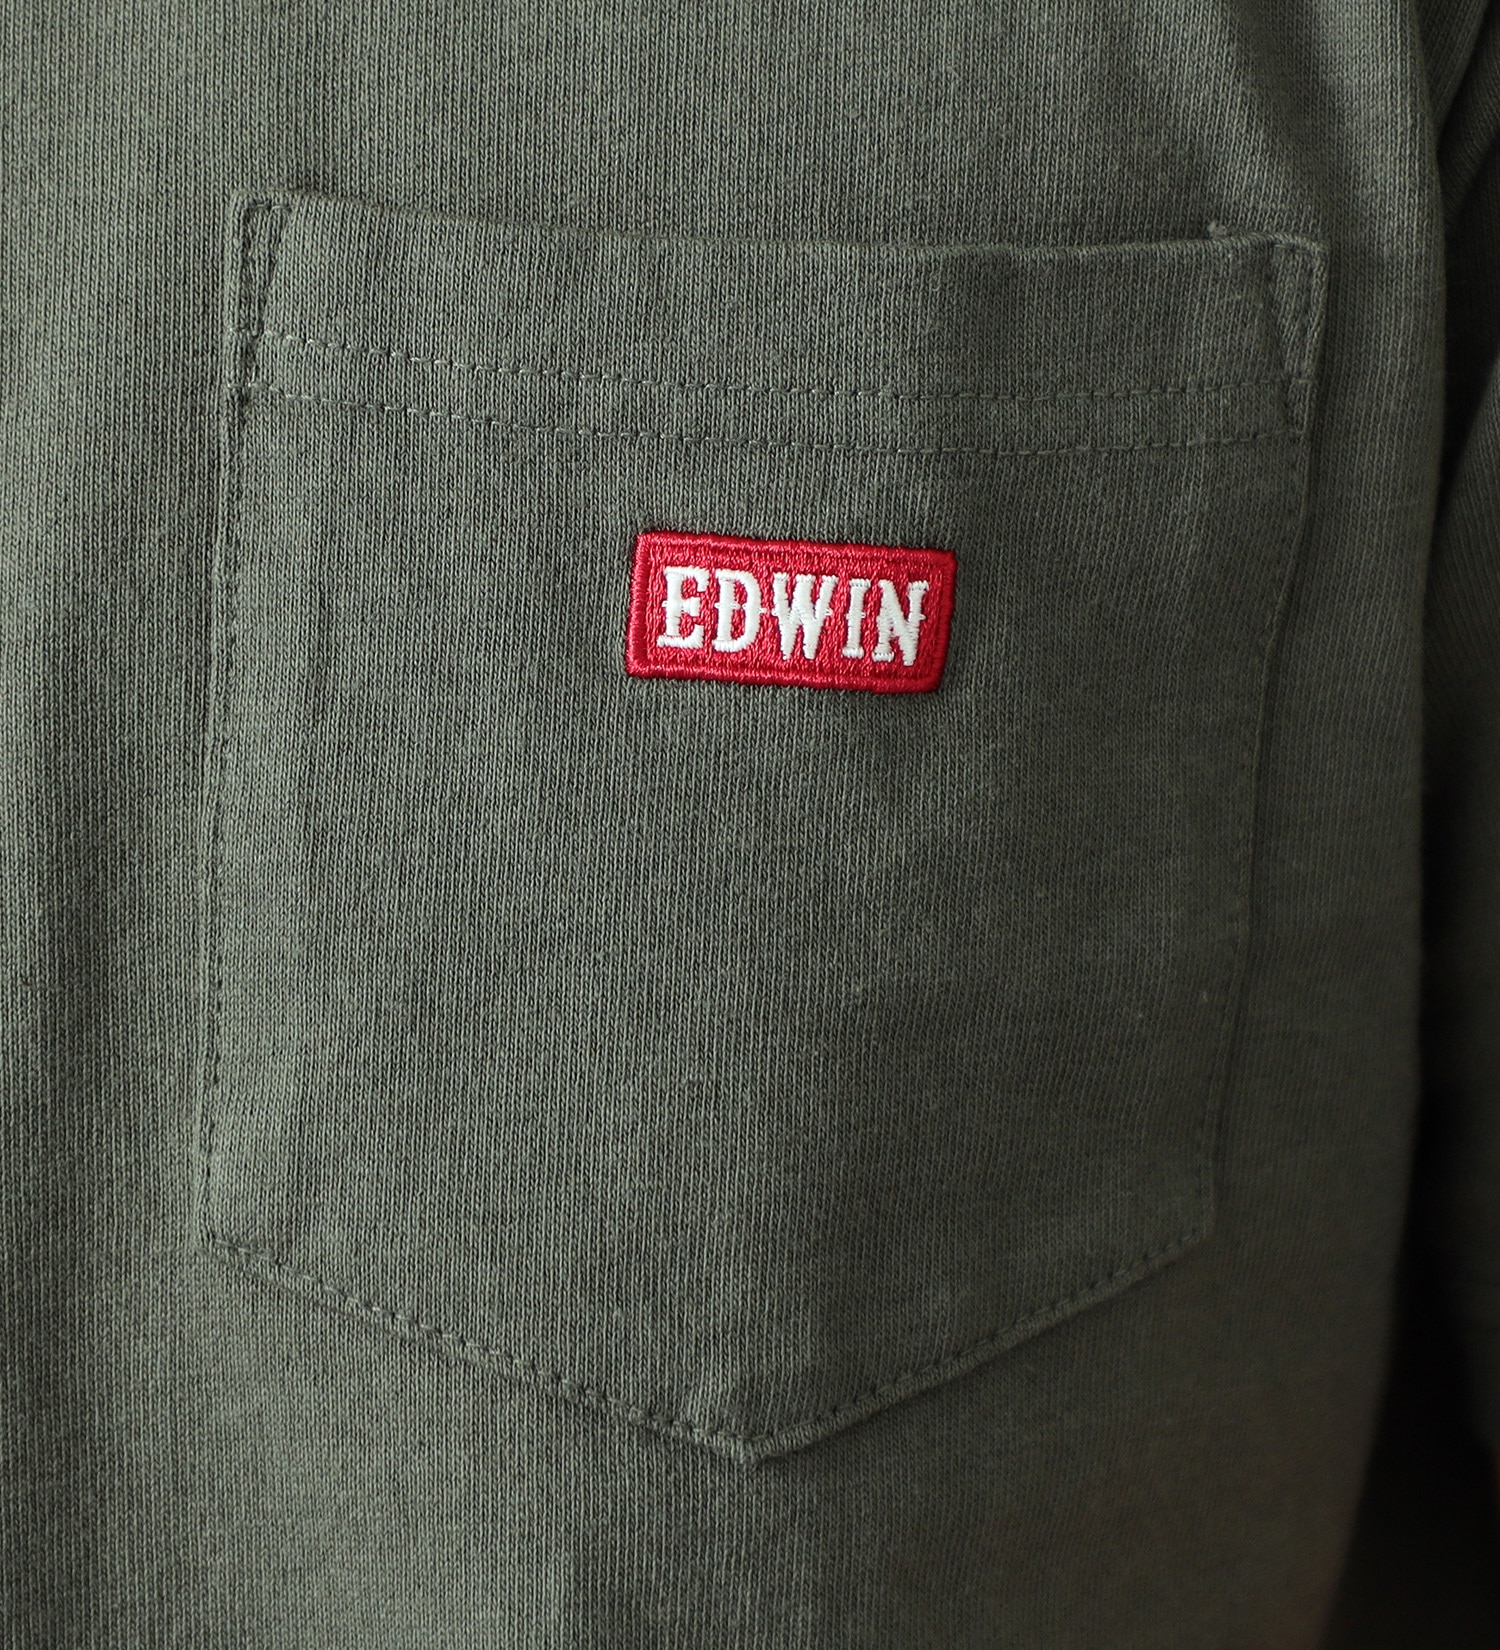 EDWIN(エドウイン)のポケットボックスロゴ半袖Tシャツ【アウトレット店舗・WEB限定】|トップス/Tシャツ/カットソー/メンズ|グリーン